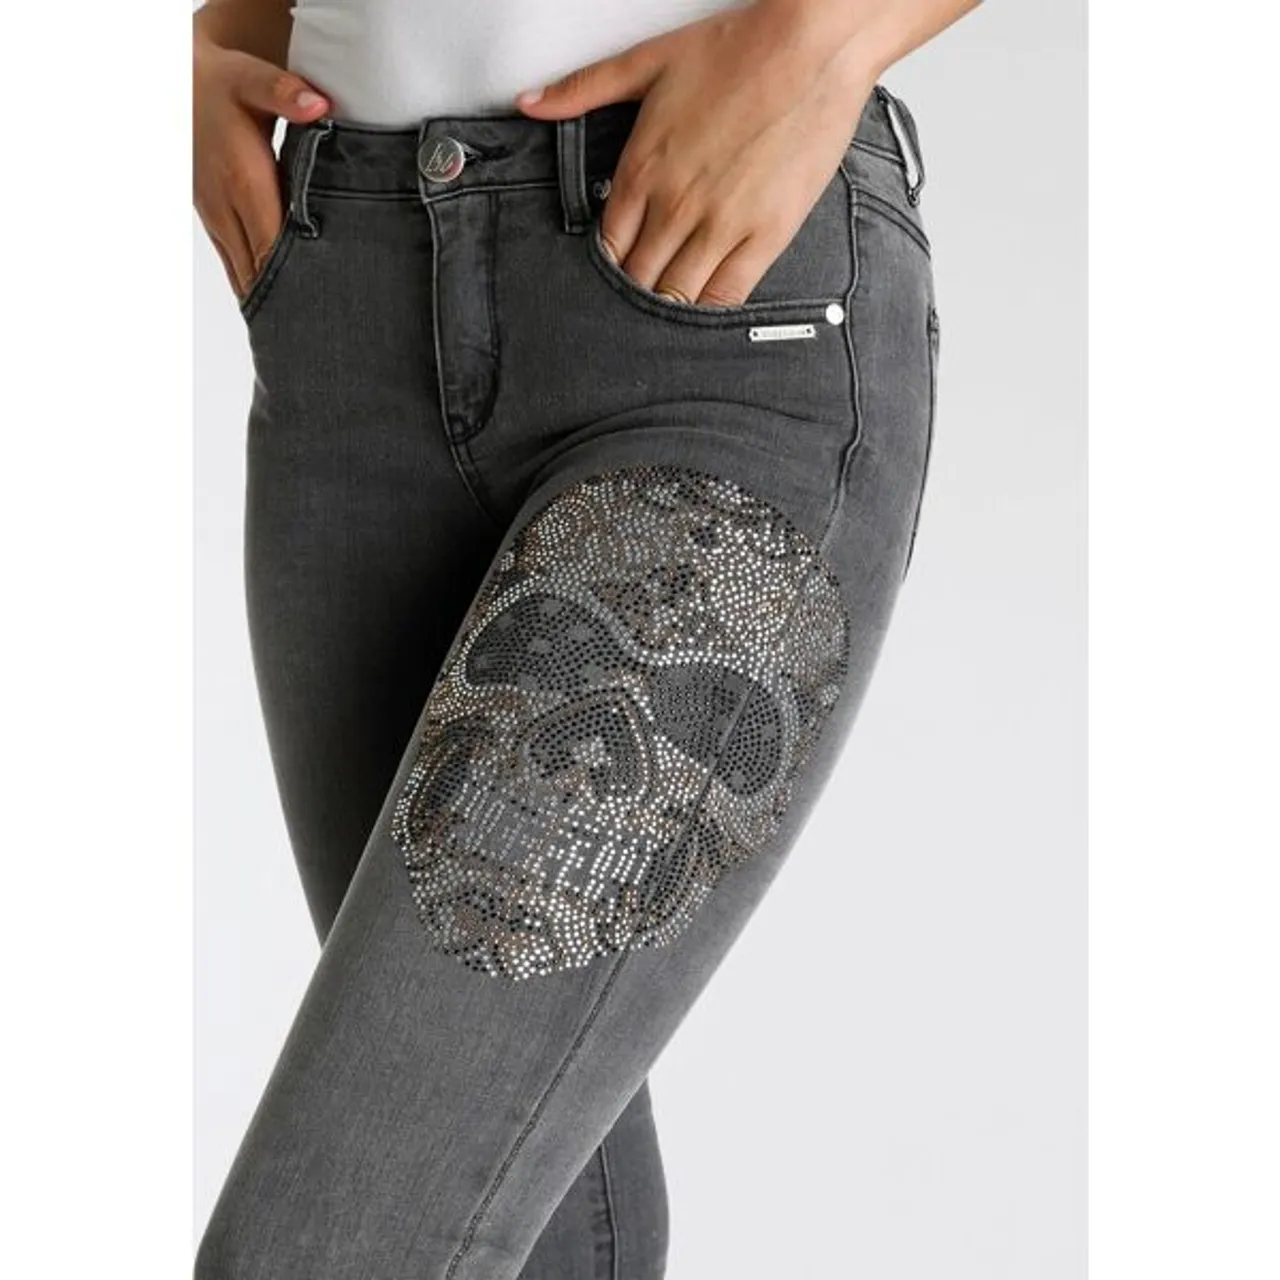 5-Pocket-Jeans BRUNO BANANI Gr. 38, N-Gr, schwarz (black used) Damen Jeans 5-Pocket-Jeans Schädel- Applikation NEUE KOLLEKTION